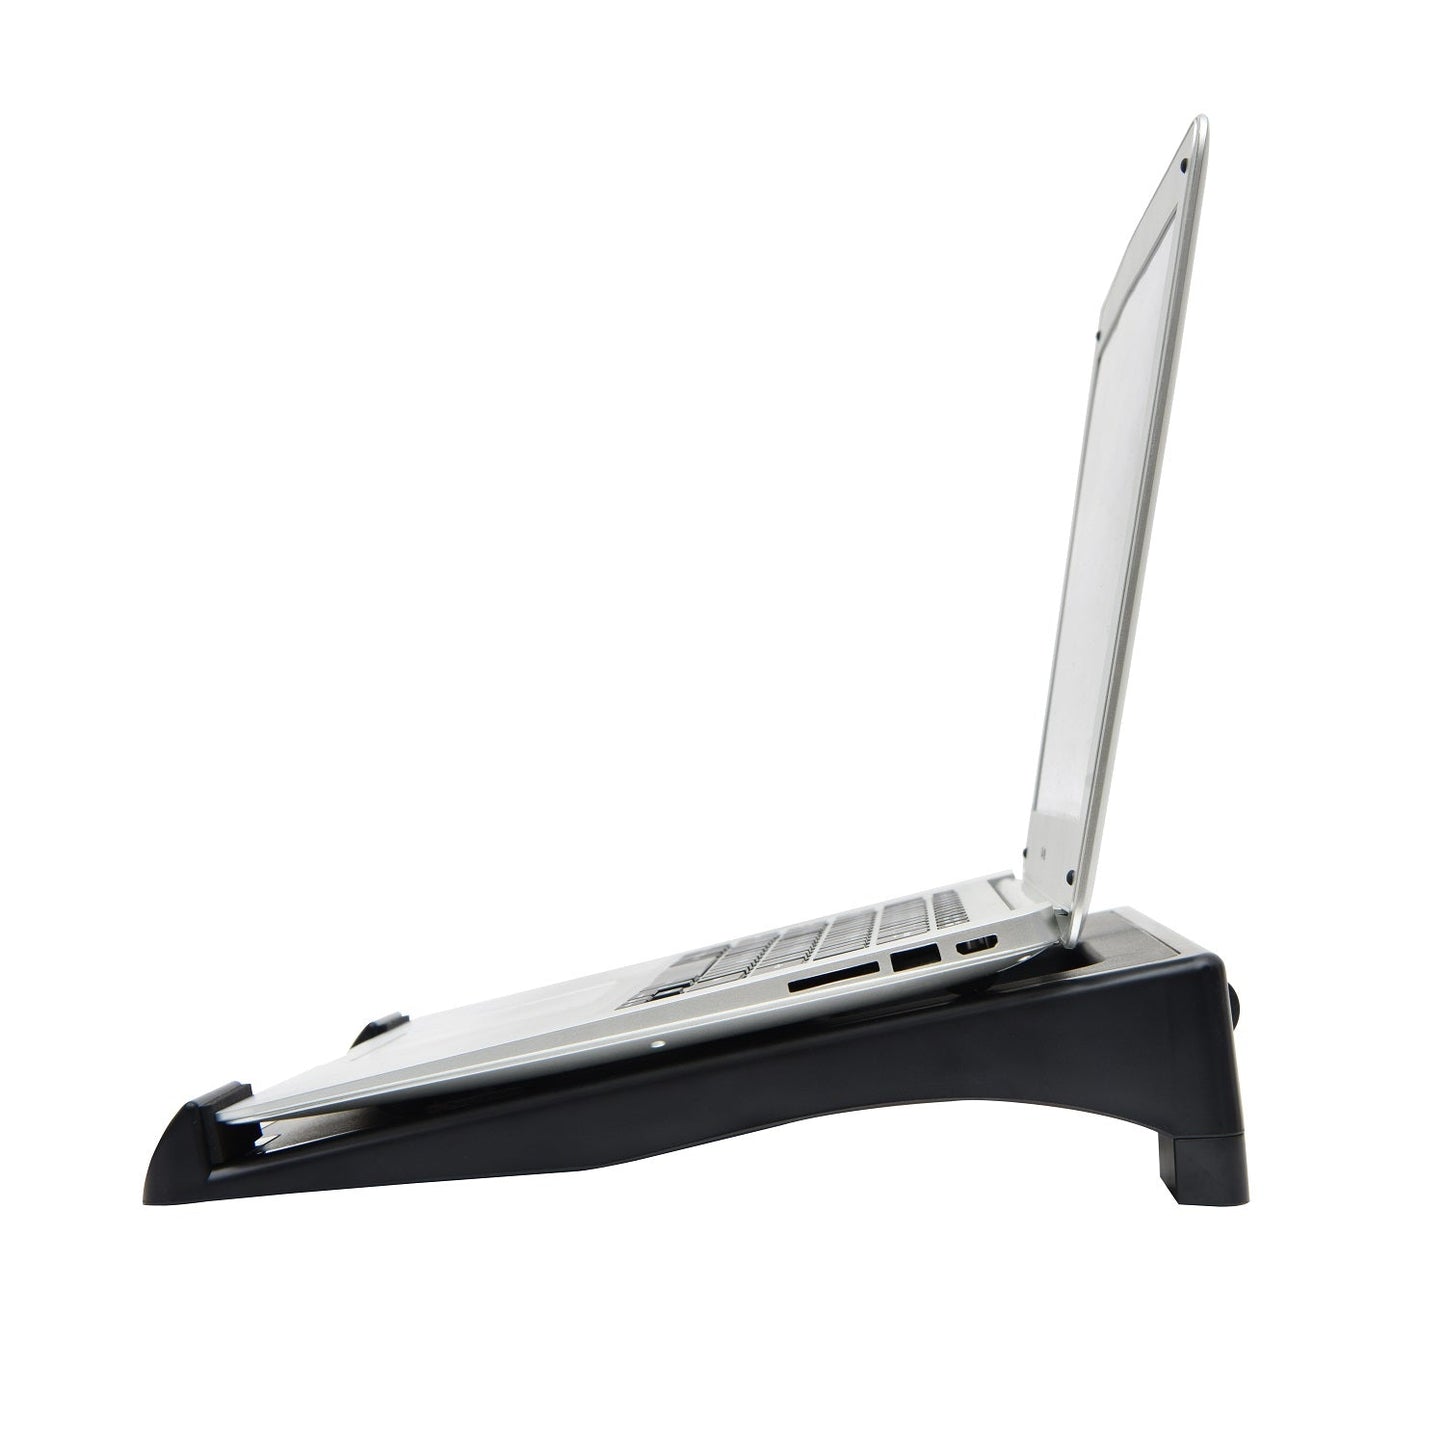 Support pour ordinateur portable réglable en hauteur et en angle DAC® MP-195, noir